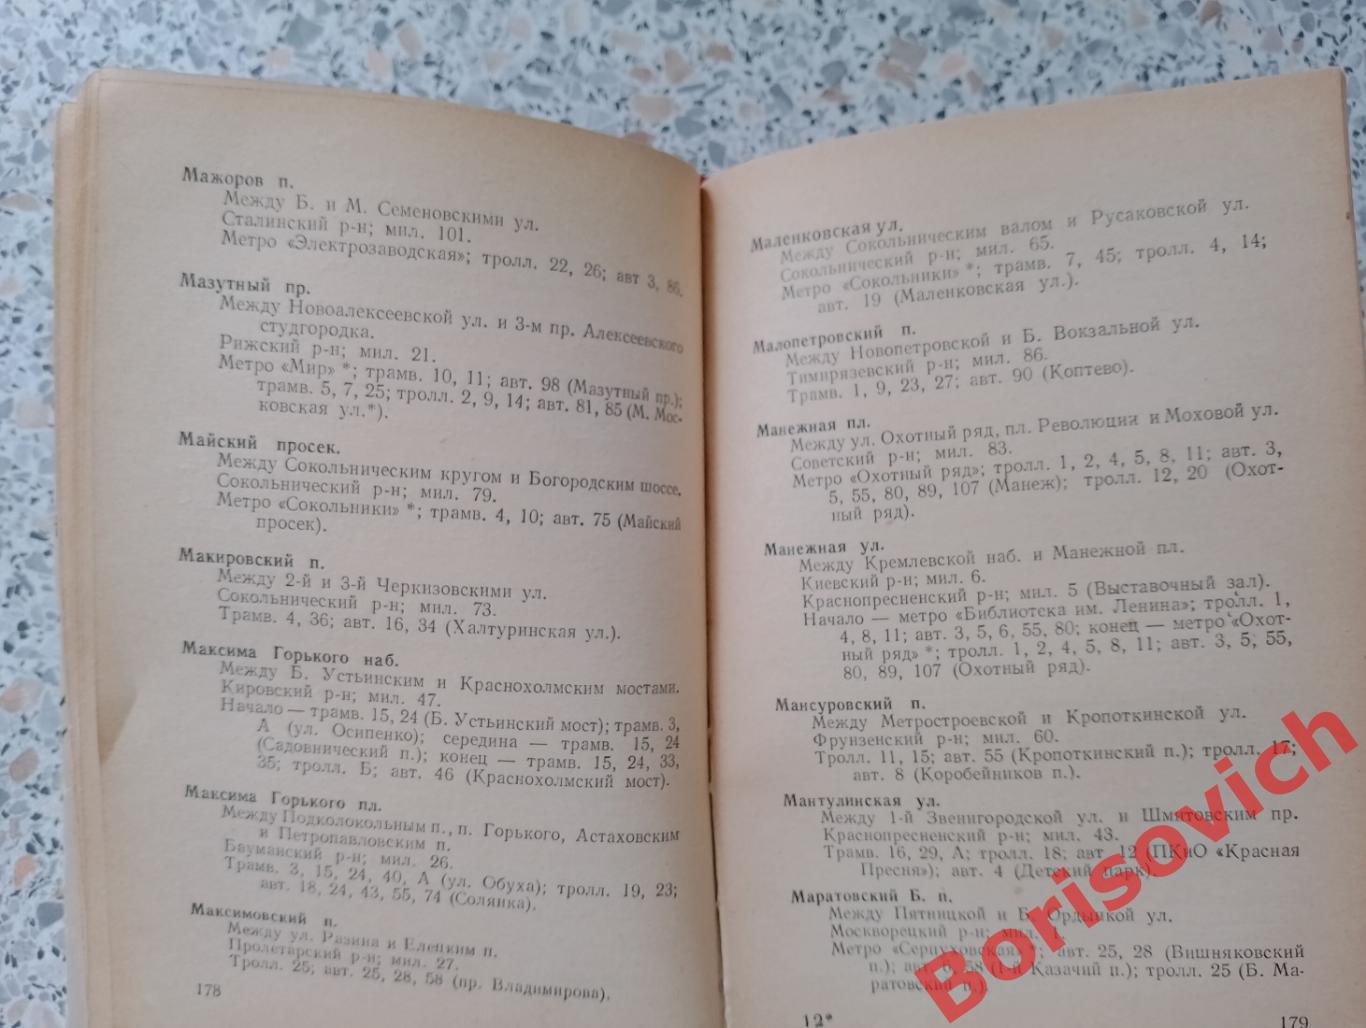 Справочник улиц МОСКВЫ 1959 г496 страниц 3